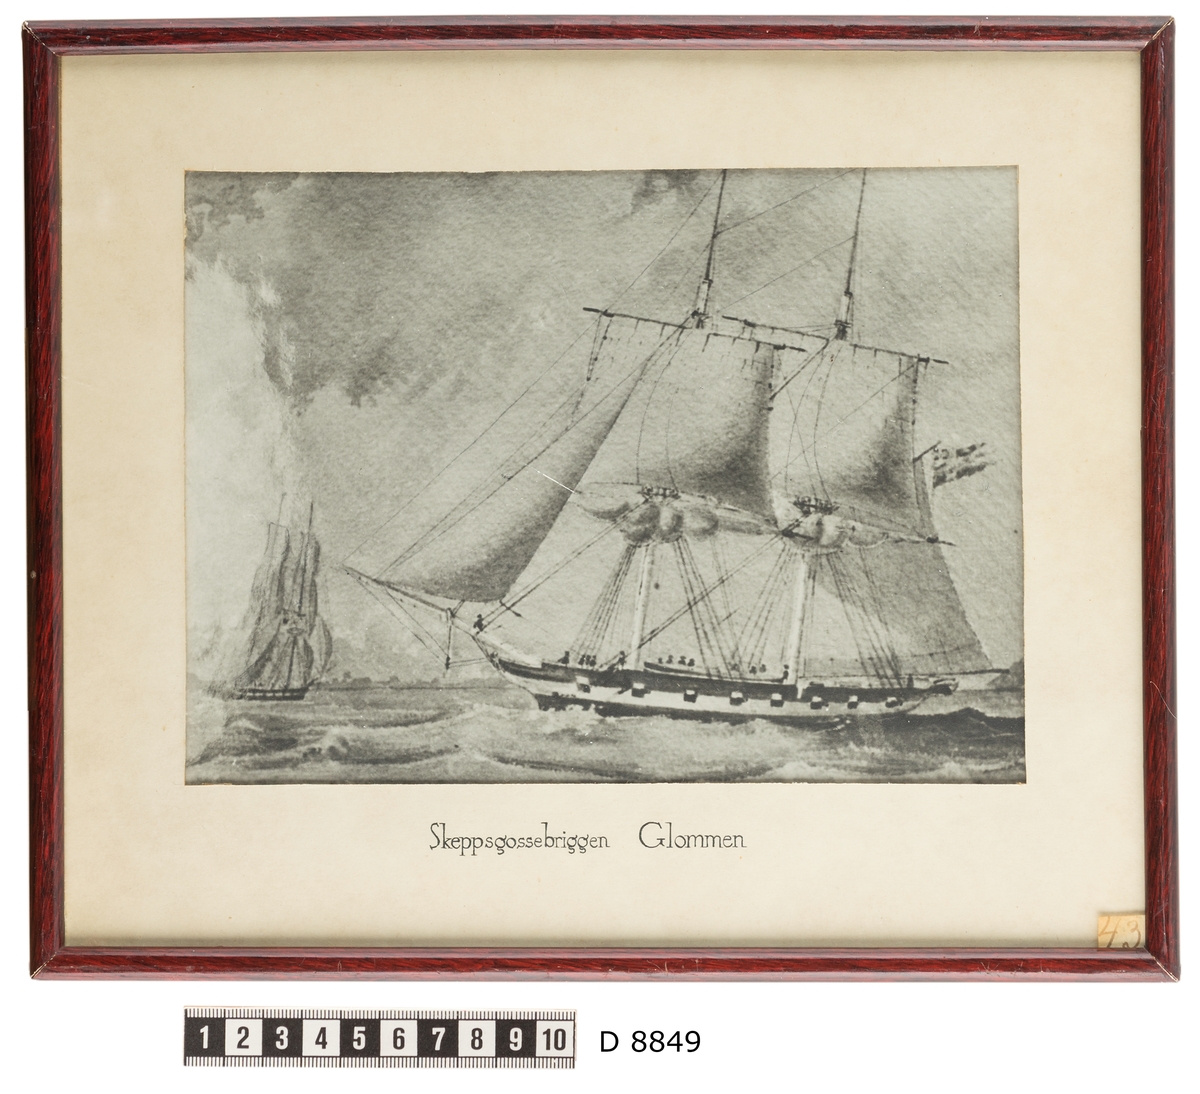 Denna reprofotografering efter en målning föreställer skeppsgossebriggen Glommen till havs.